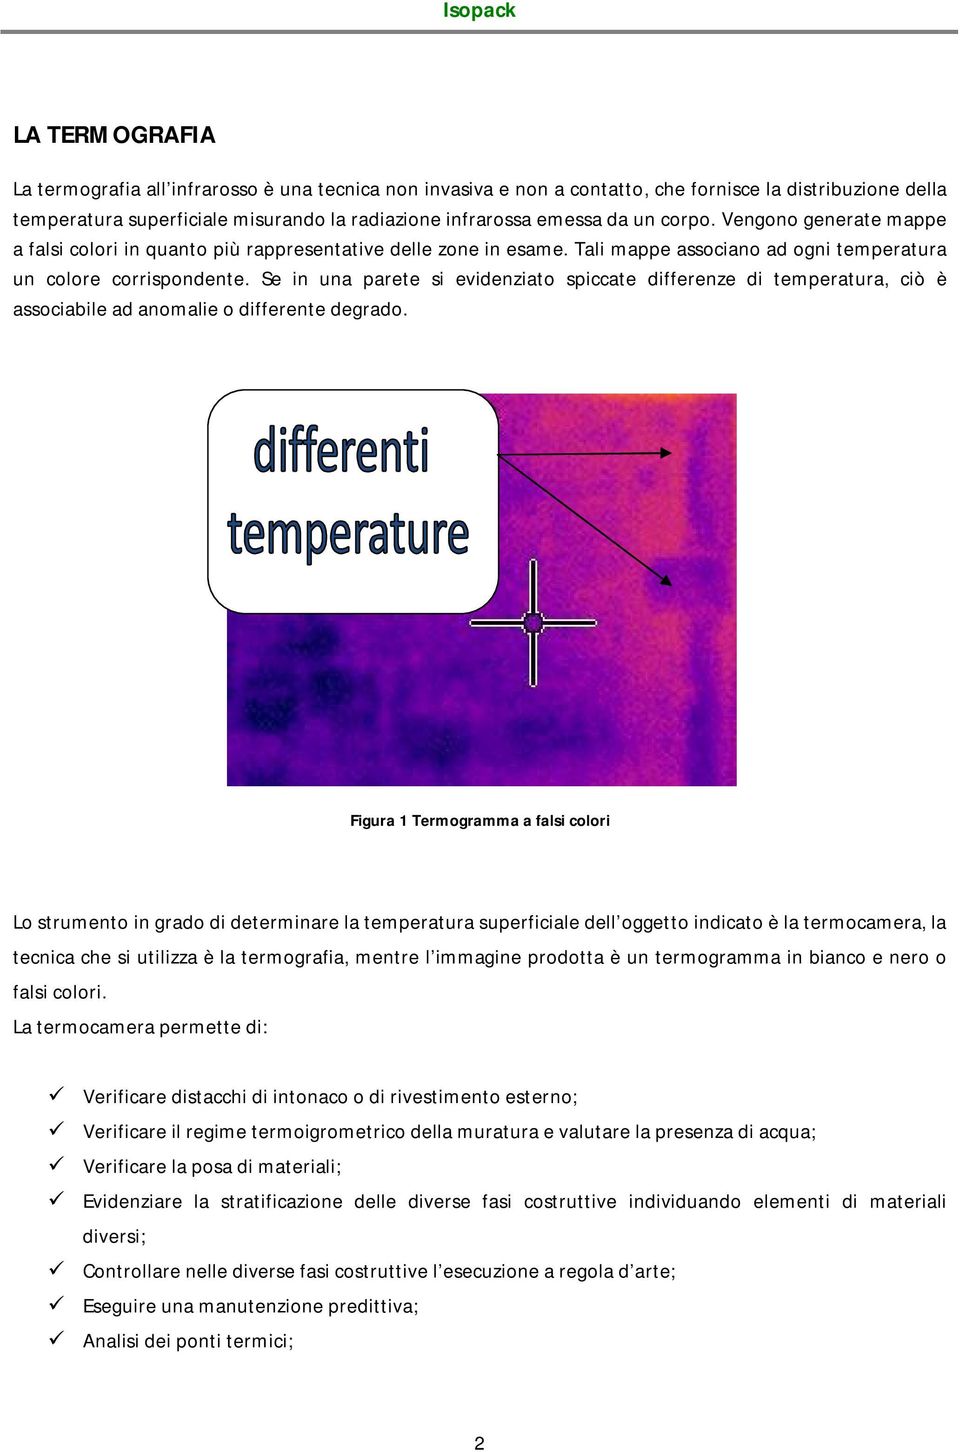 Se in una parete si evidenziato spiccate differenze di temperatura, ciò è associabile ad anomalie o differente degrado.